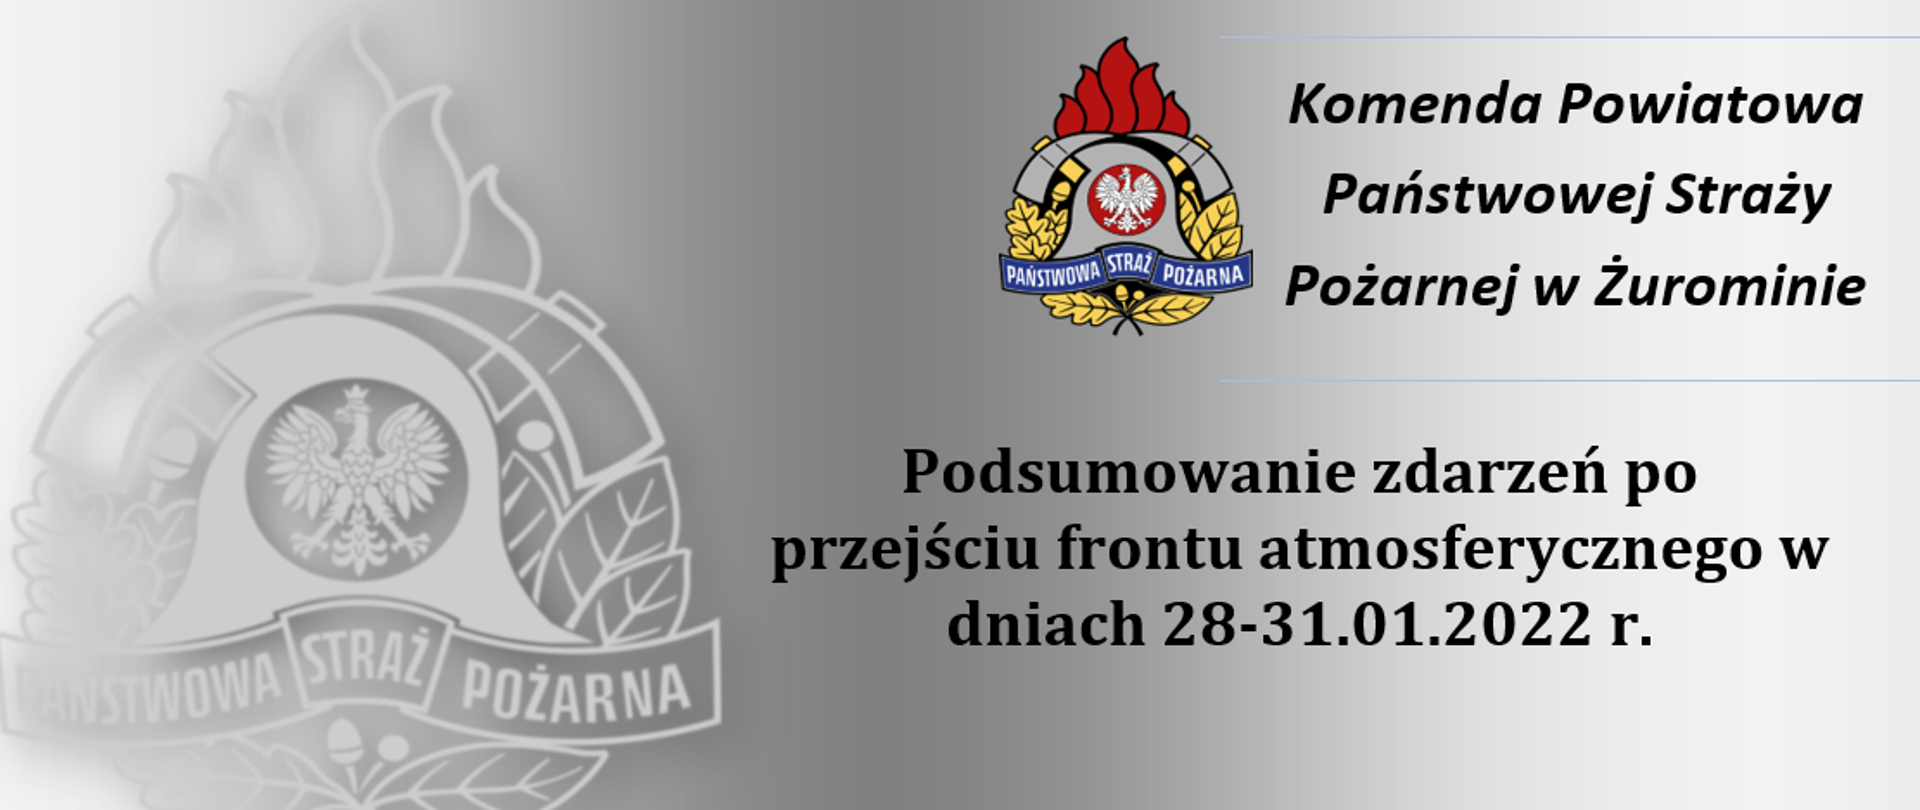 Podsumowanie zdarzeń po przejściu frontu atmosferycznego w dniach 29-30.01.2022 r. baner na siwym tle z logiem PSP.